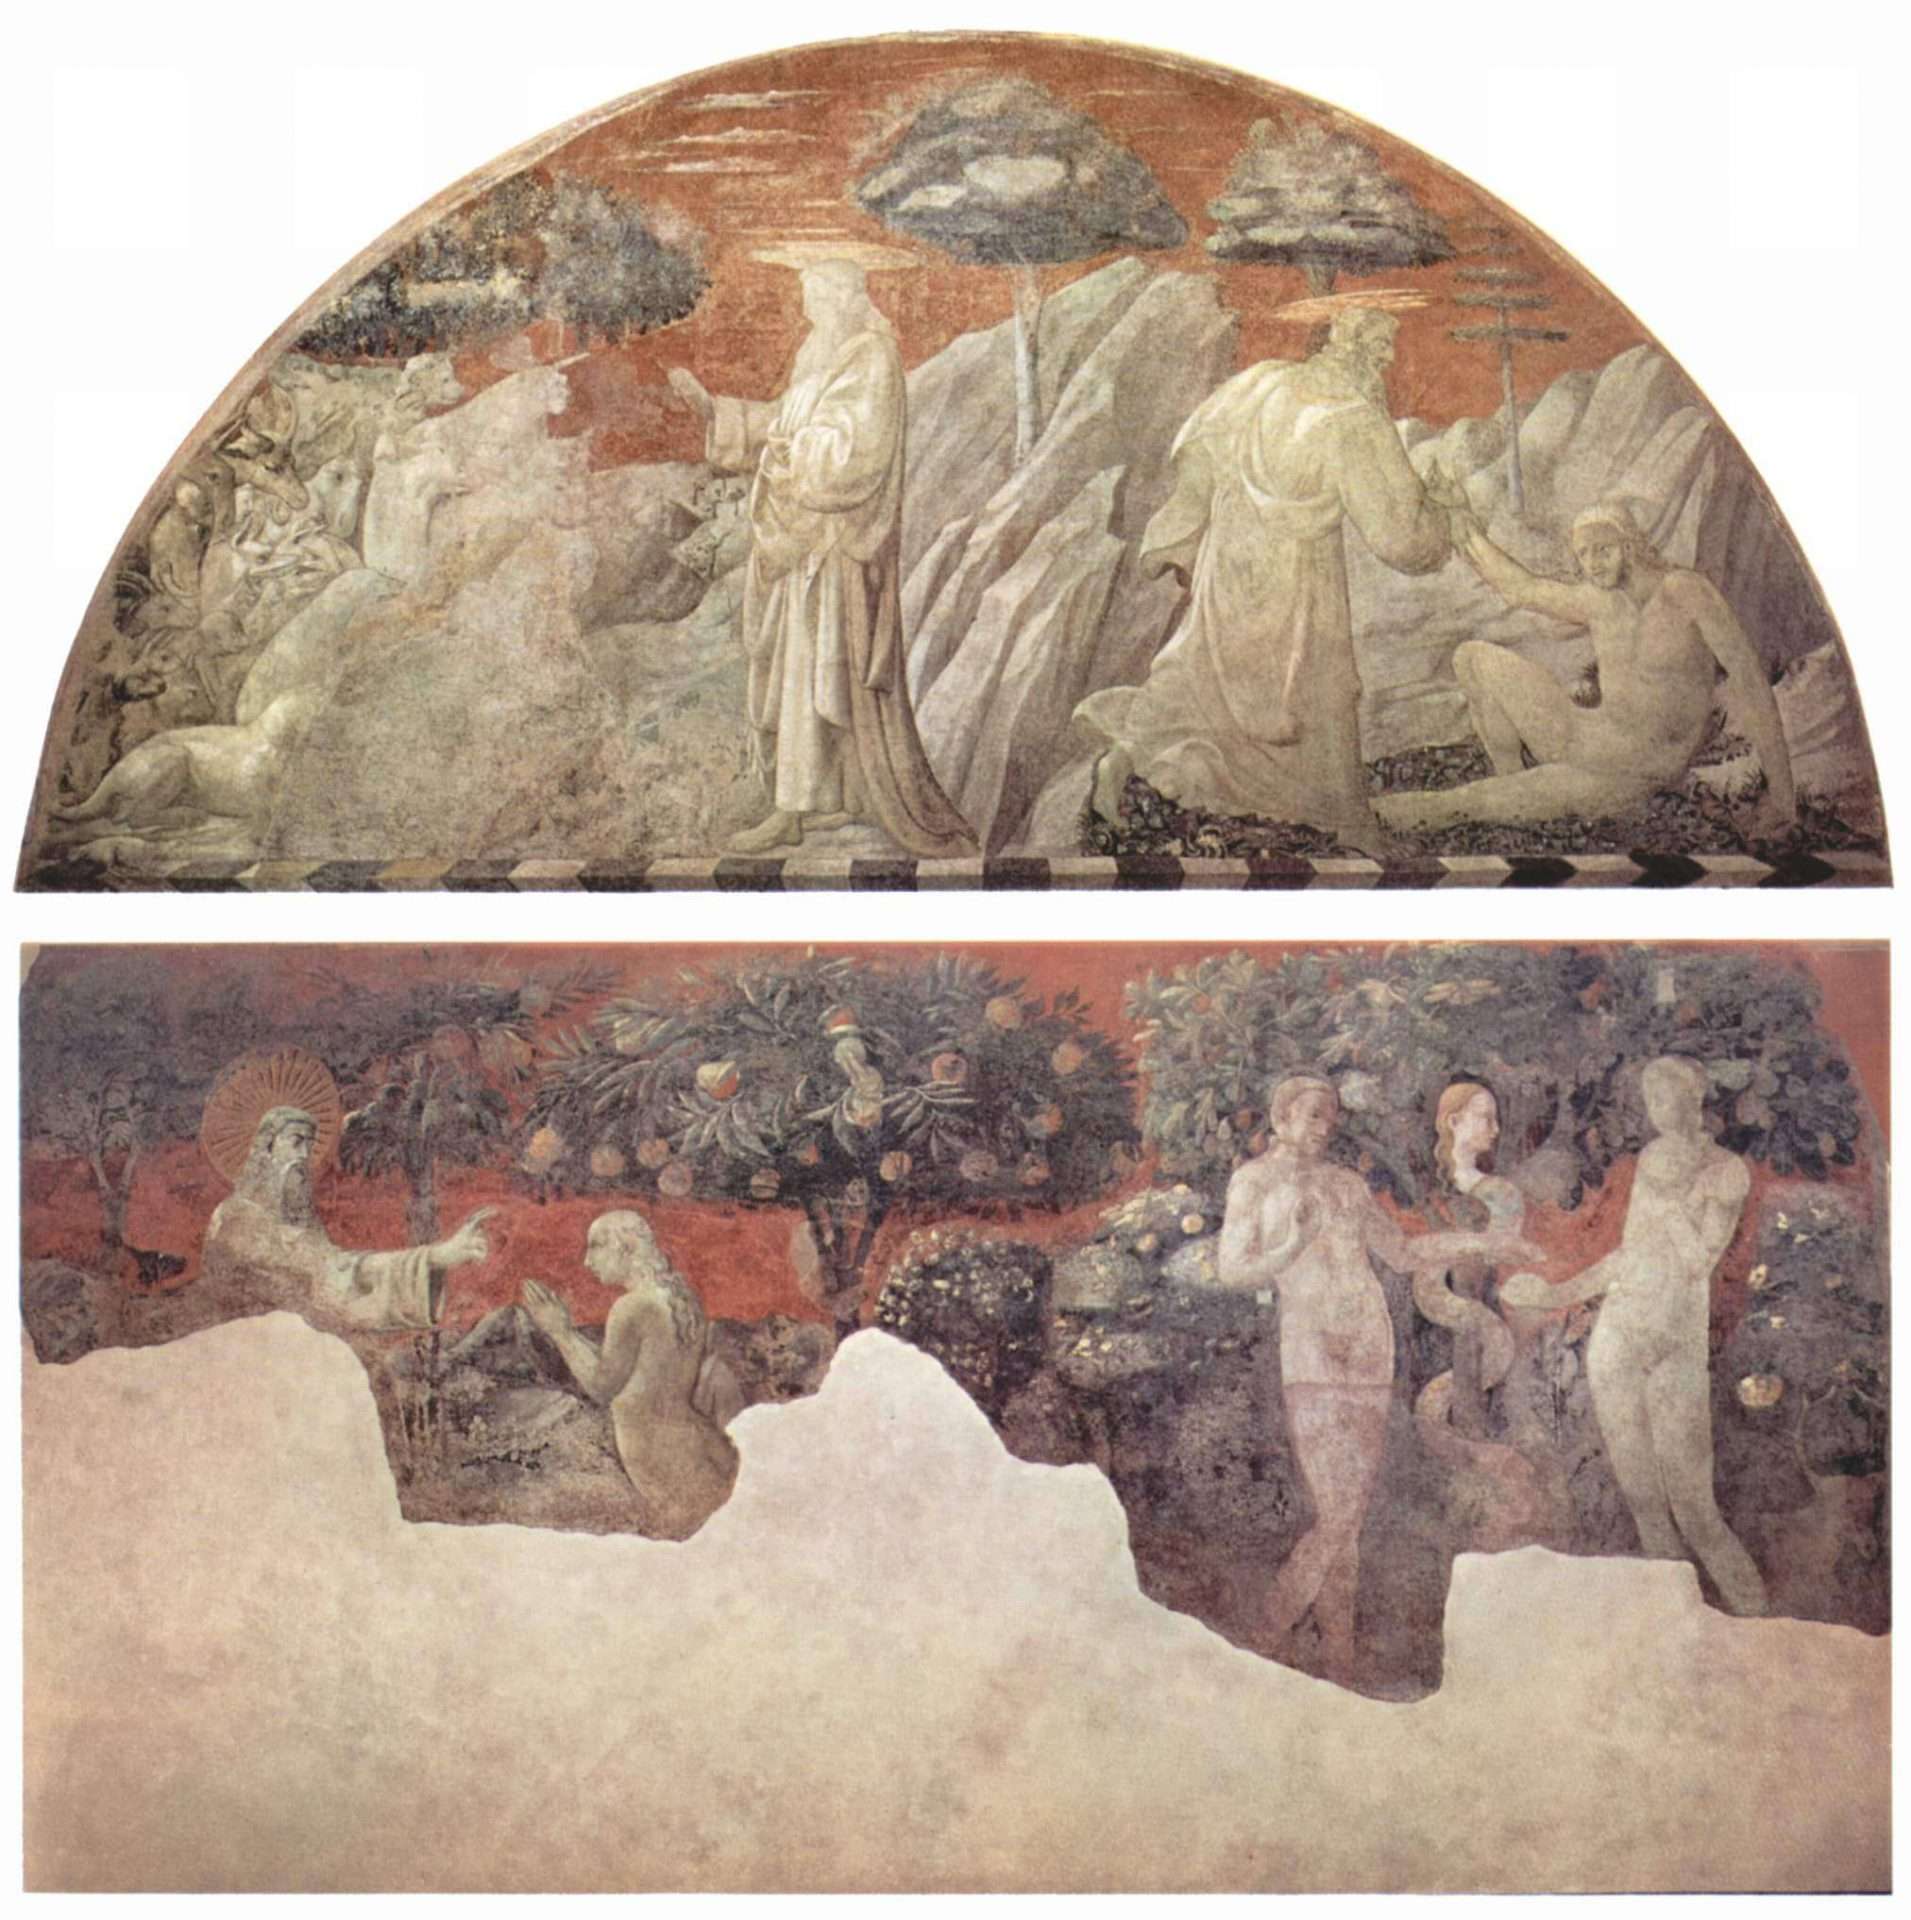 Imagen del fresco "Historias de Noé" de Paolo Uccello